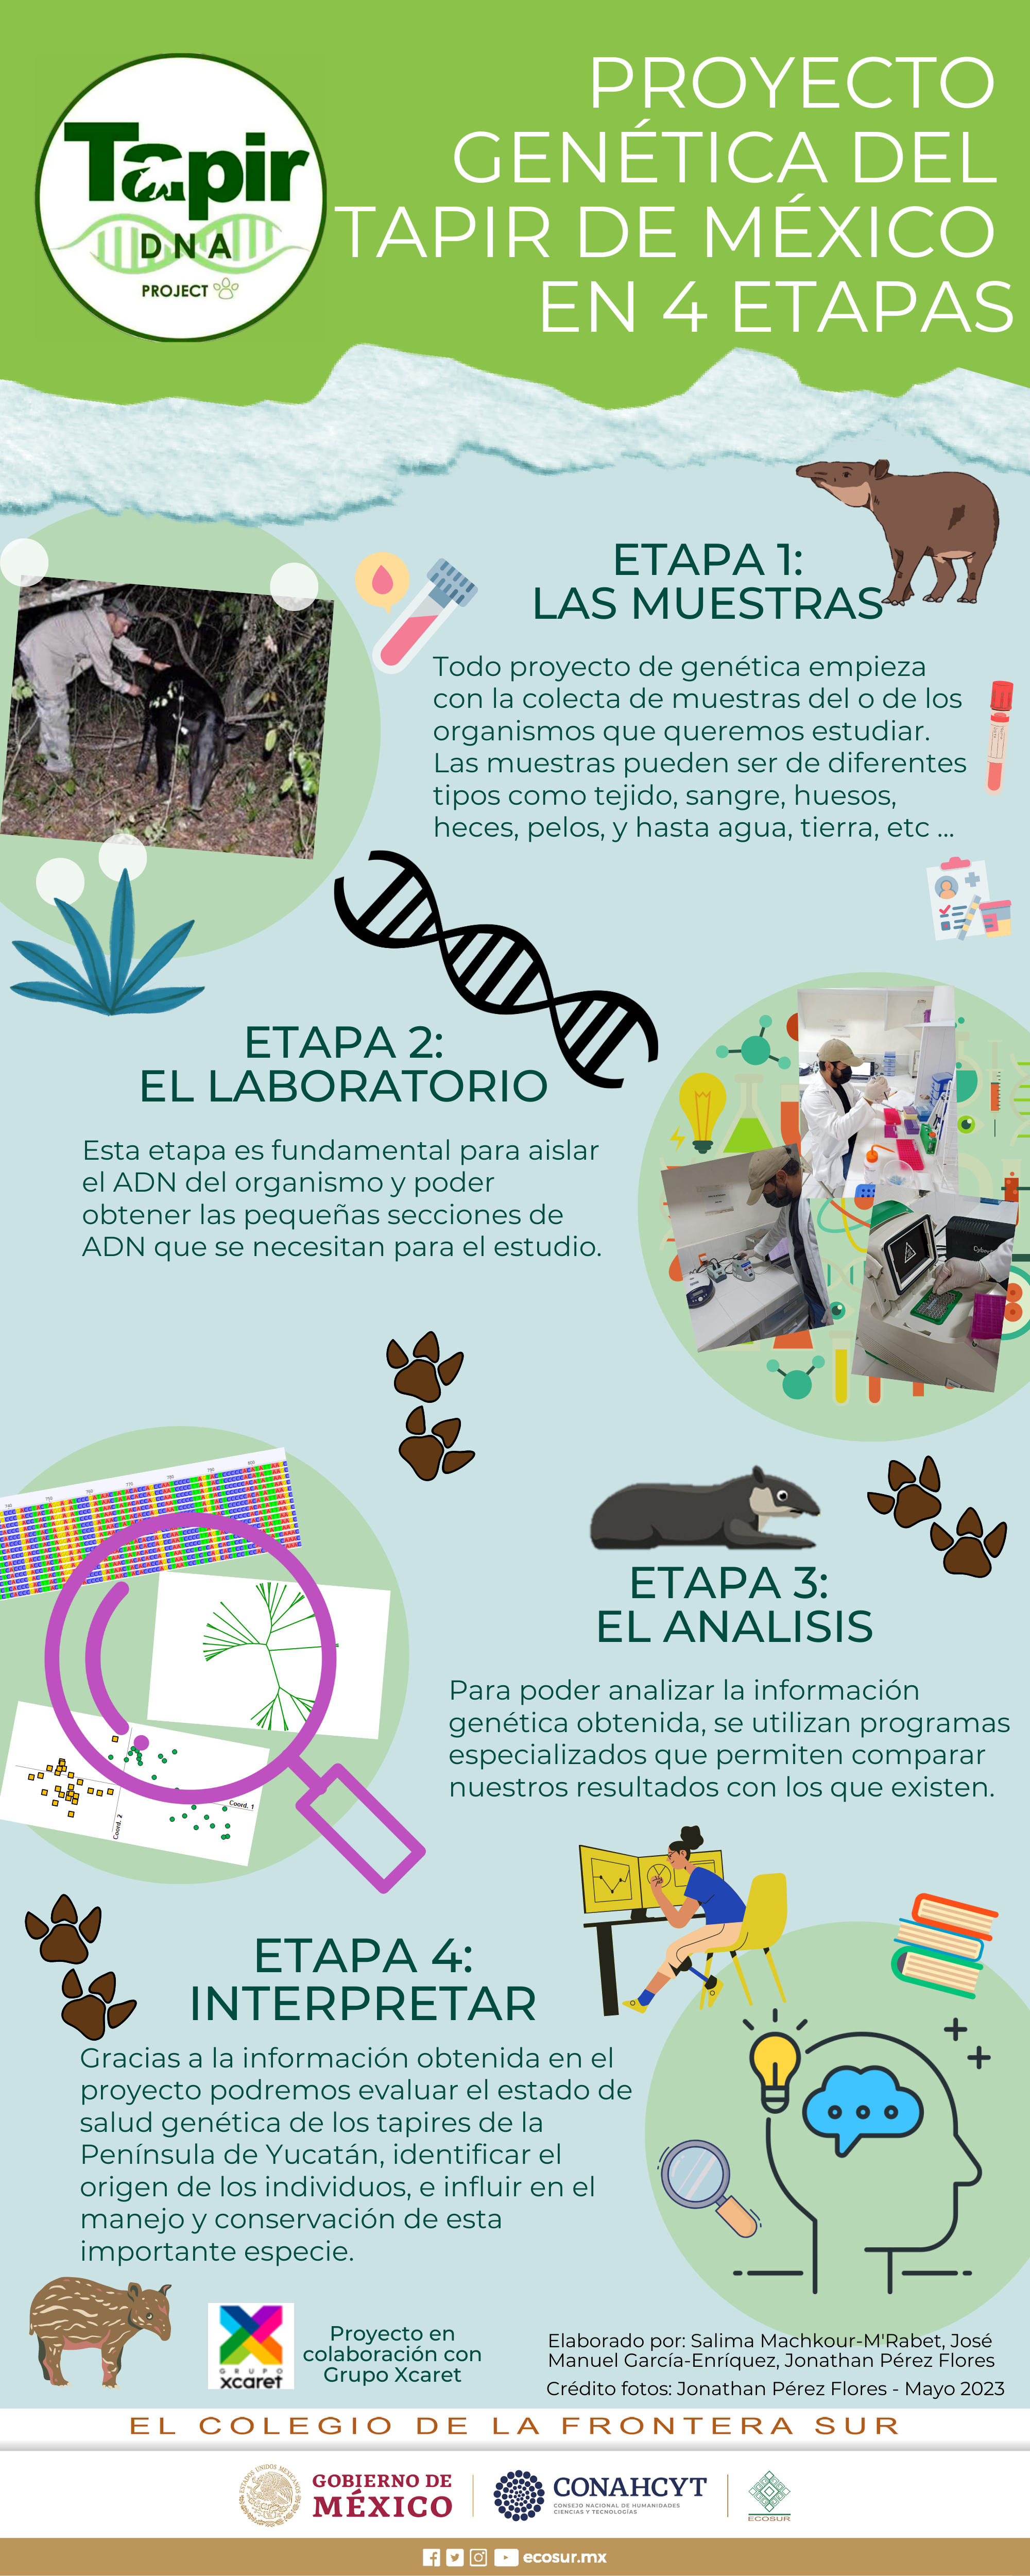 Proyecto Genética del Tapir de México en 4 etapas